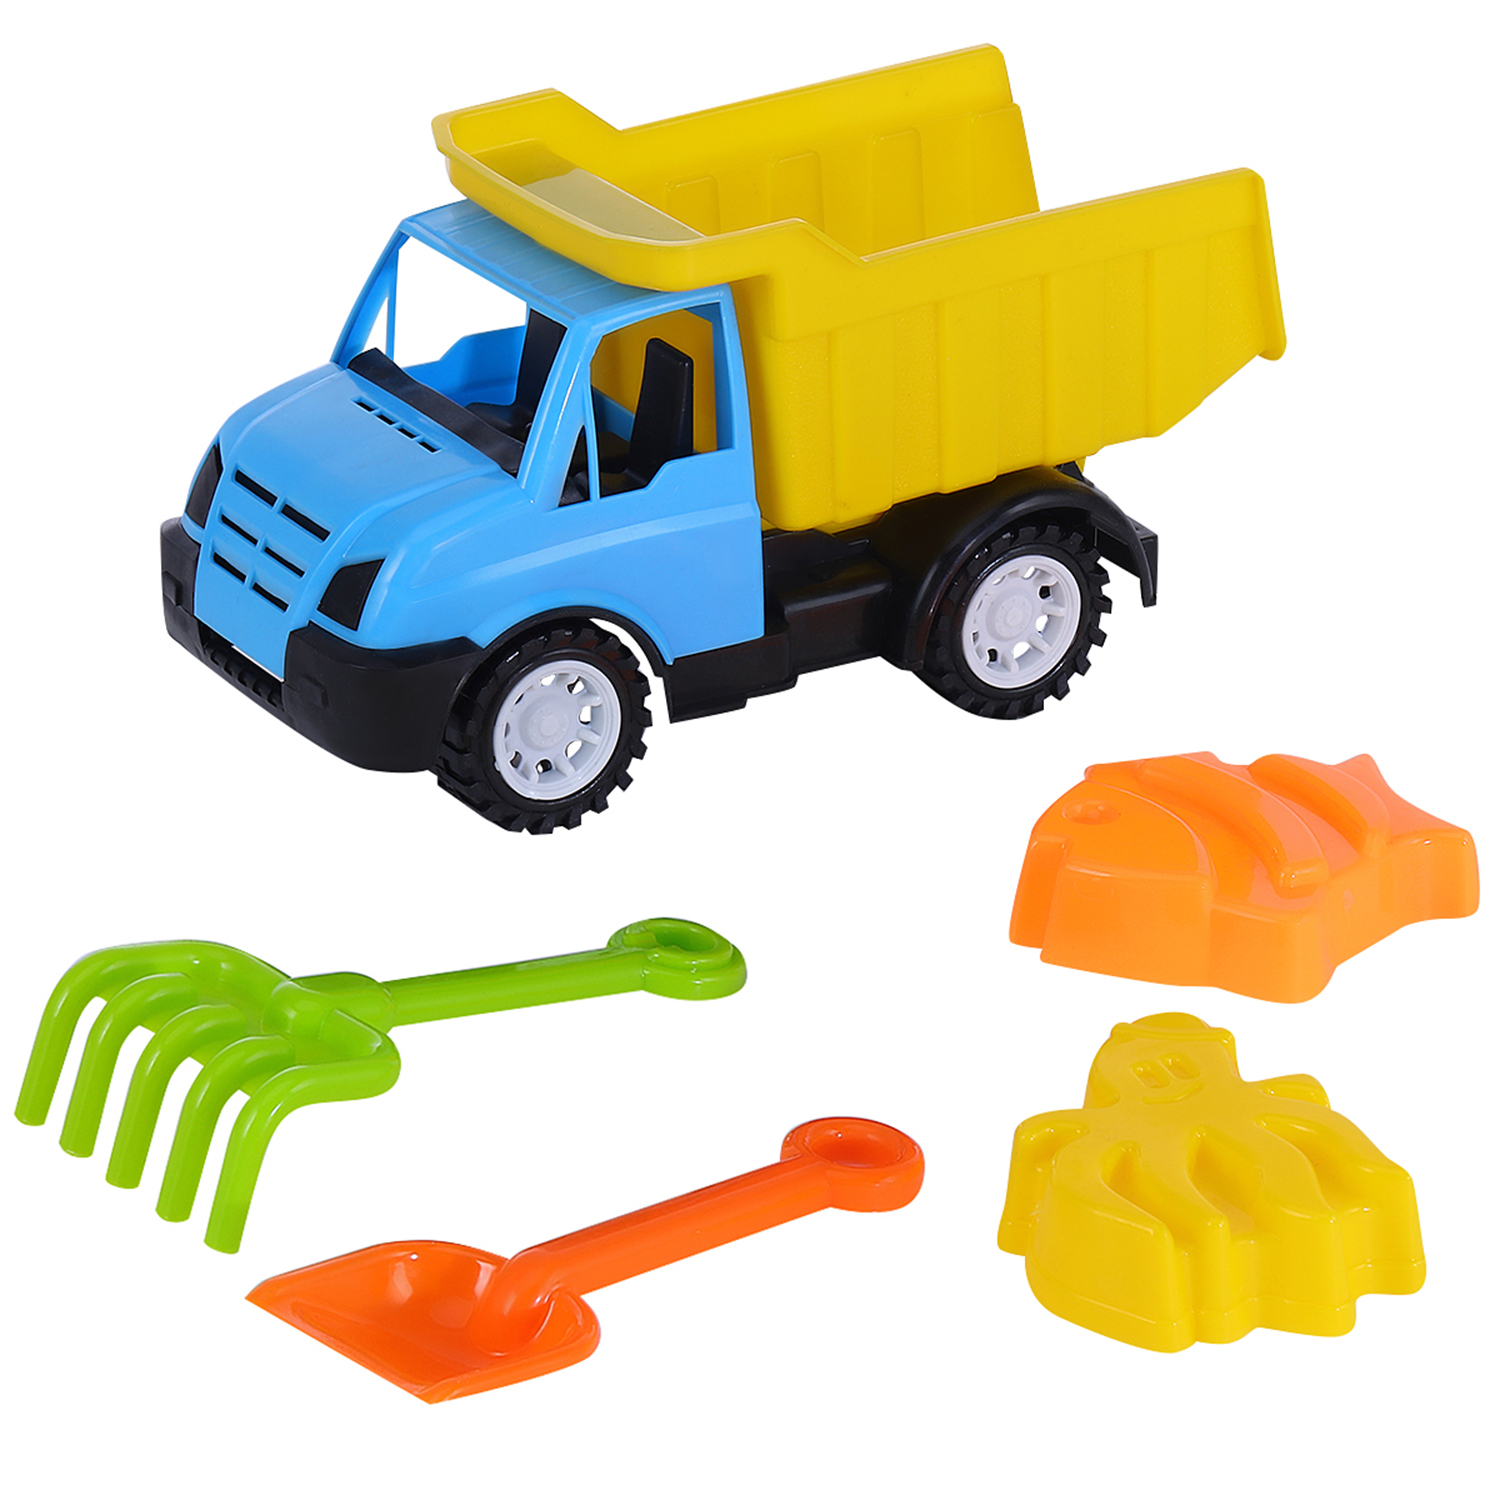 фото Песочный набор компания друзей грузовик, лопатка, грабли, 2 формочки, голубой, jb5300474